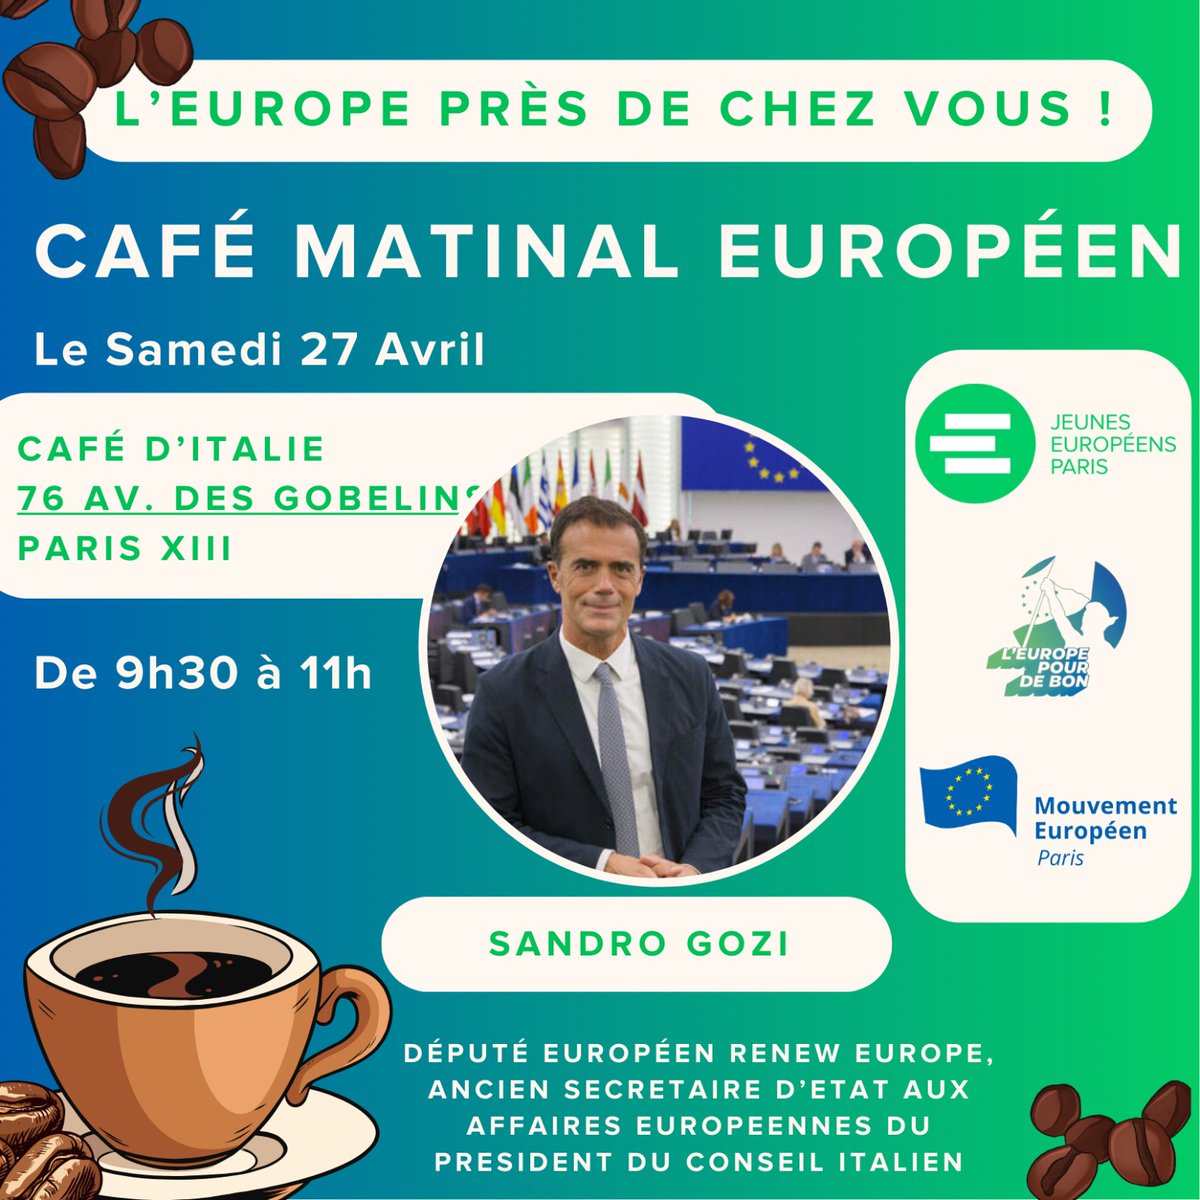 La 4ème édition du Café matinal européen du 27 avril en présence de Sandro Gozi !